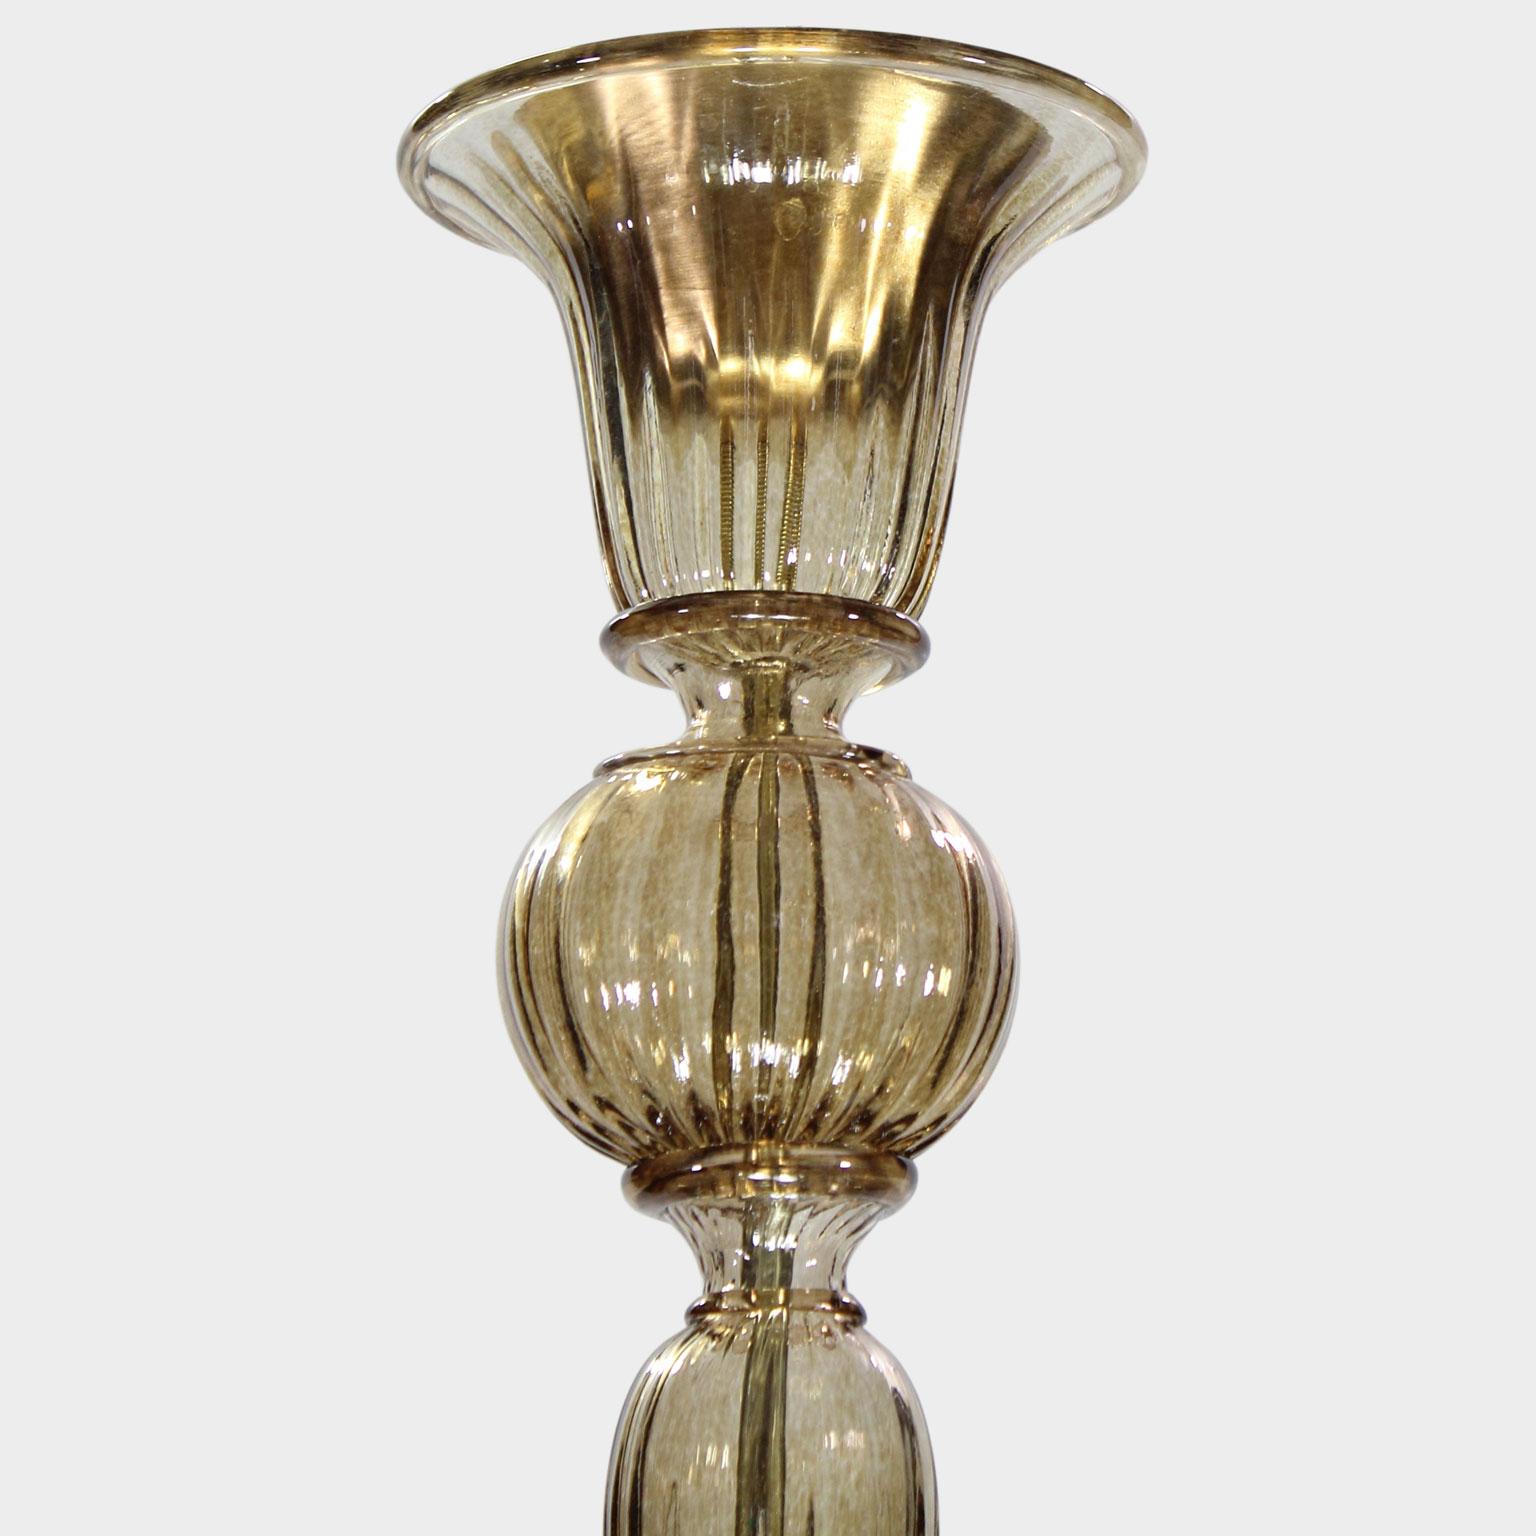 Diese Collection'S aus Murano-Glas zeichnet sich durch ihre außergewöhnliche Schlichtheit aus. Es ist das Ergebnis einer Forschung, die auf die klassischen Murano-Kronleuchter zurückgreift, mit dem Ziel, sie unter modernen Bedingungen neu zu